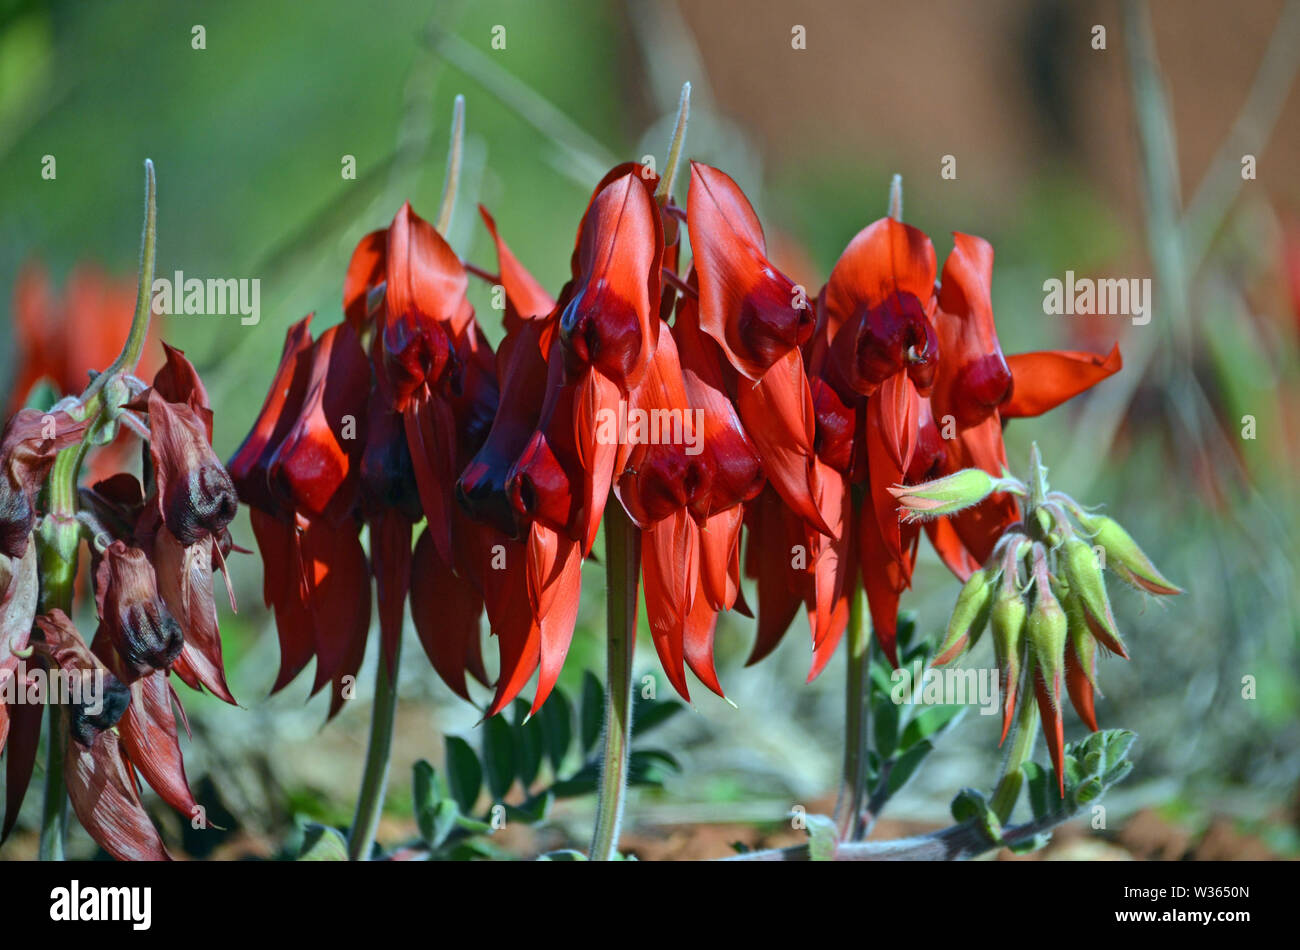 Sturts australienne fleurs pois du désert, Swainsona formosa, famille des Fabaceae. Emblème floral de l'Australie du Sud Banque D'Images